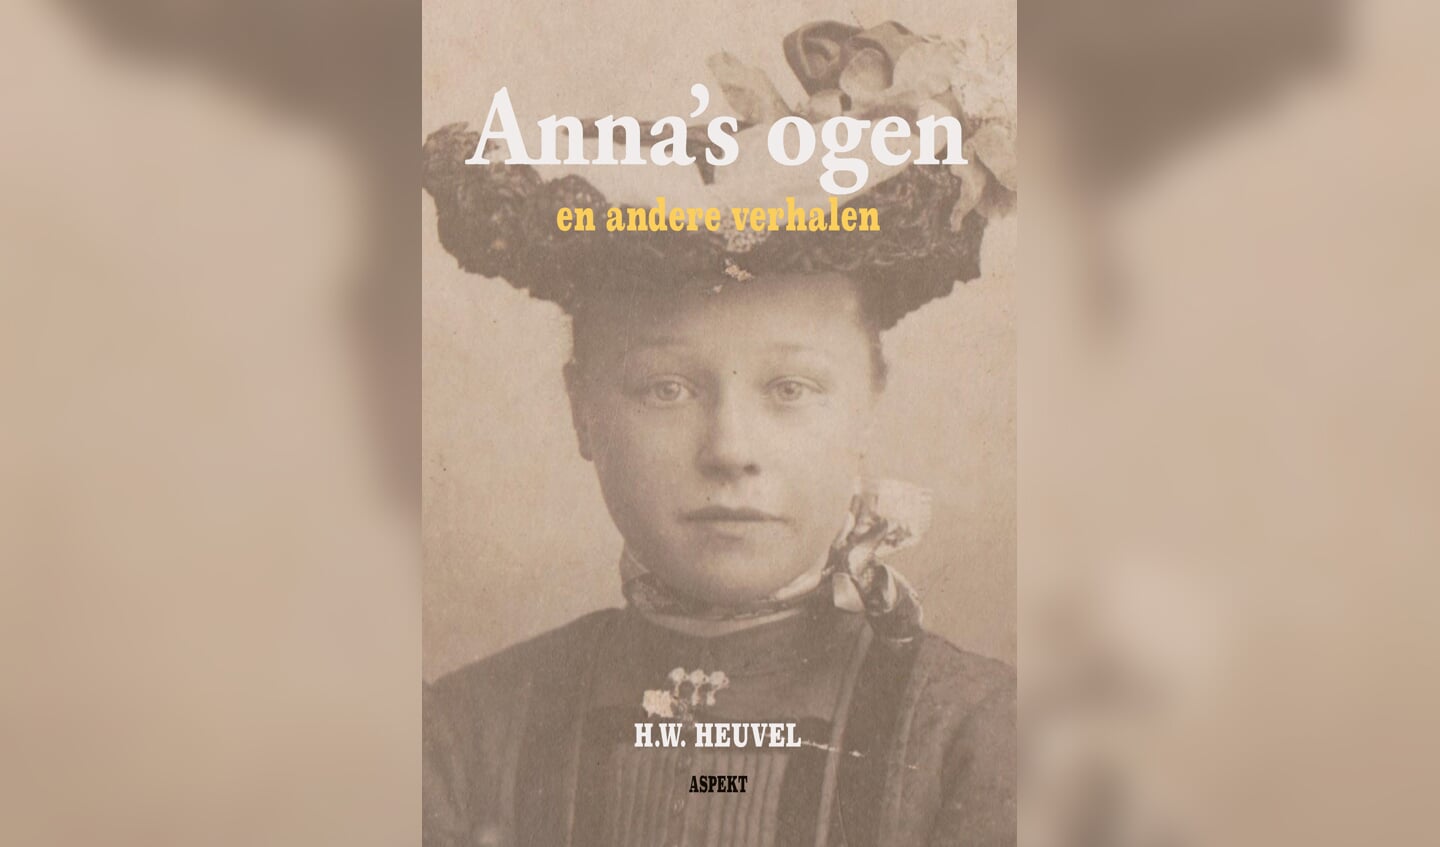 Omslag boek Anna’s ogen en andere verhalen (met een foto die nooit gemaakt had mogen worden). Foto: PR